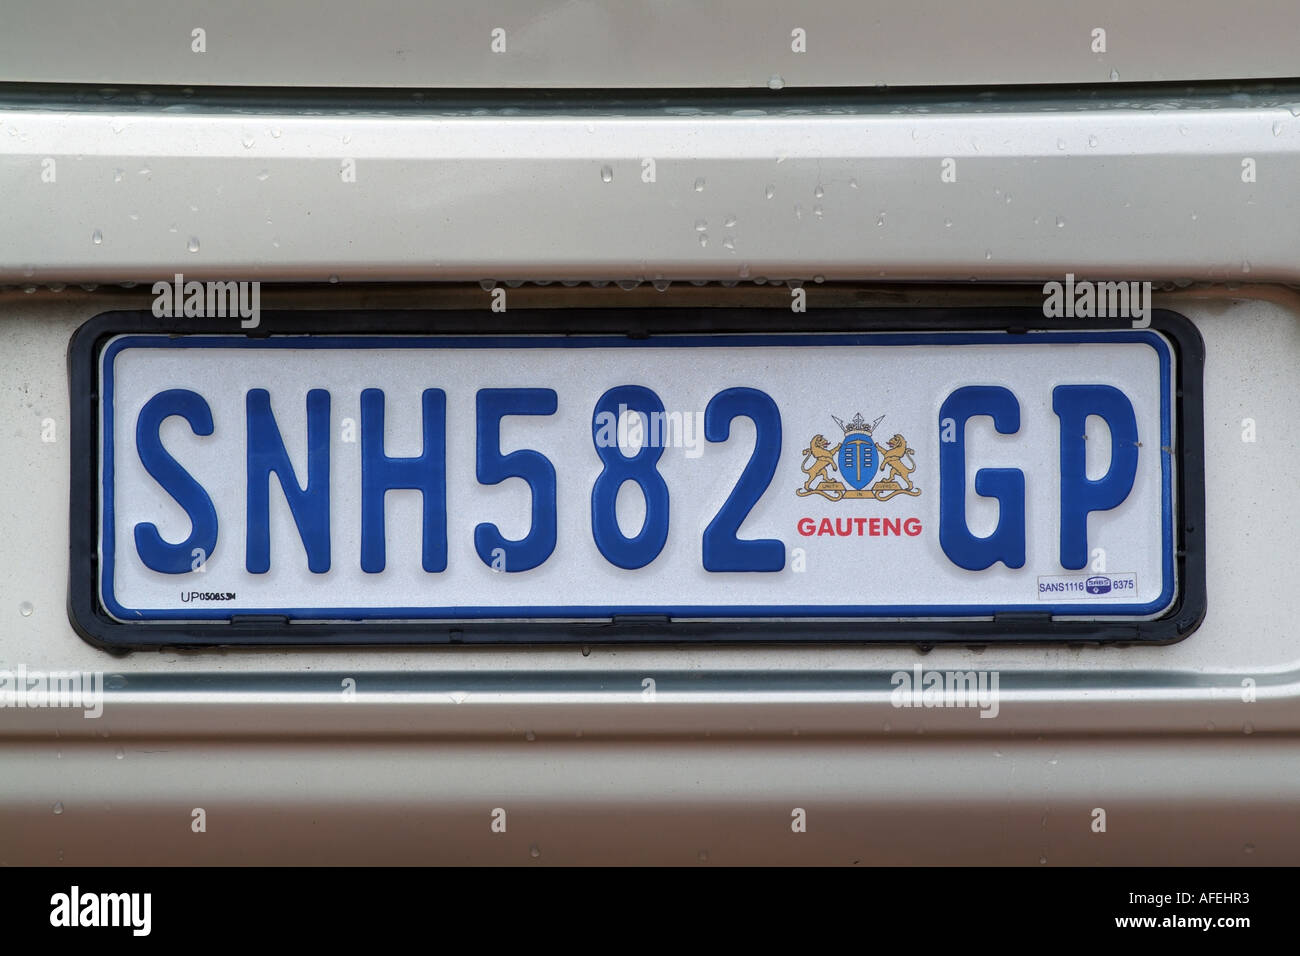 Kennzeichen auf einem südafrikanischen Auto. GP steht für die Region  Gauteng Johannesburg Stockfotografie - Alamy